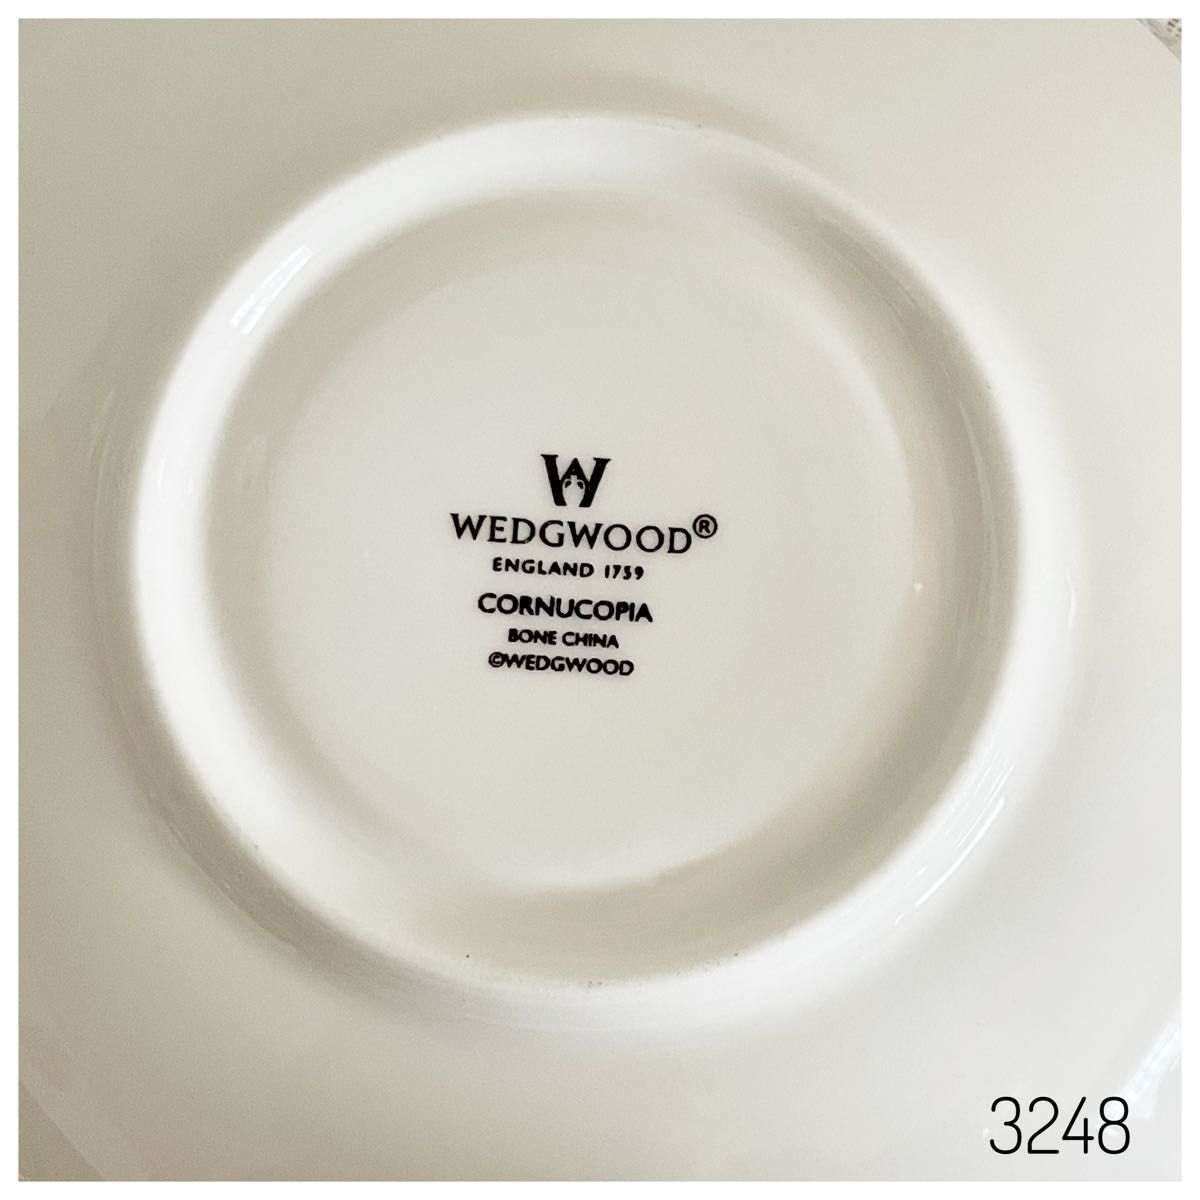 Wedgwoodコーヌコピア ティーカップ＆ソーサ ウェッジウッド プレート ウェッジウッド ケーキ皿 プレート